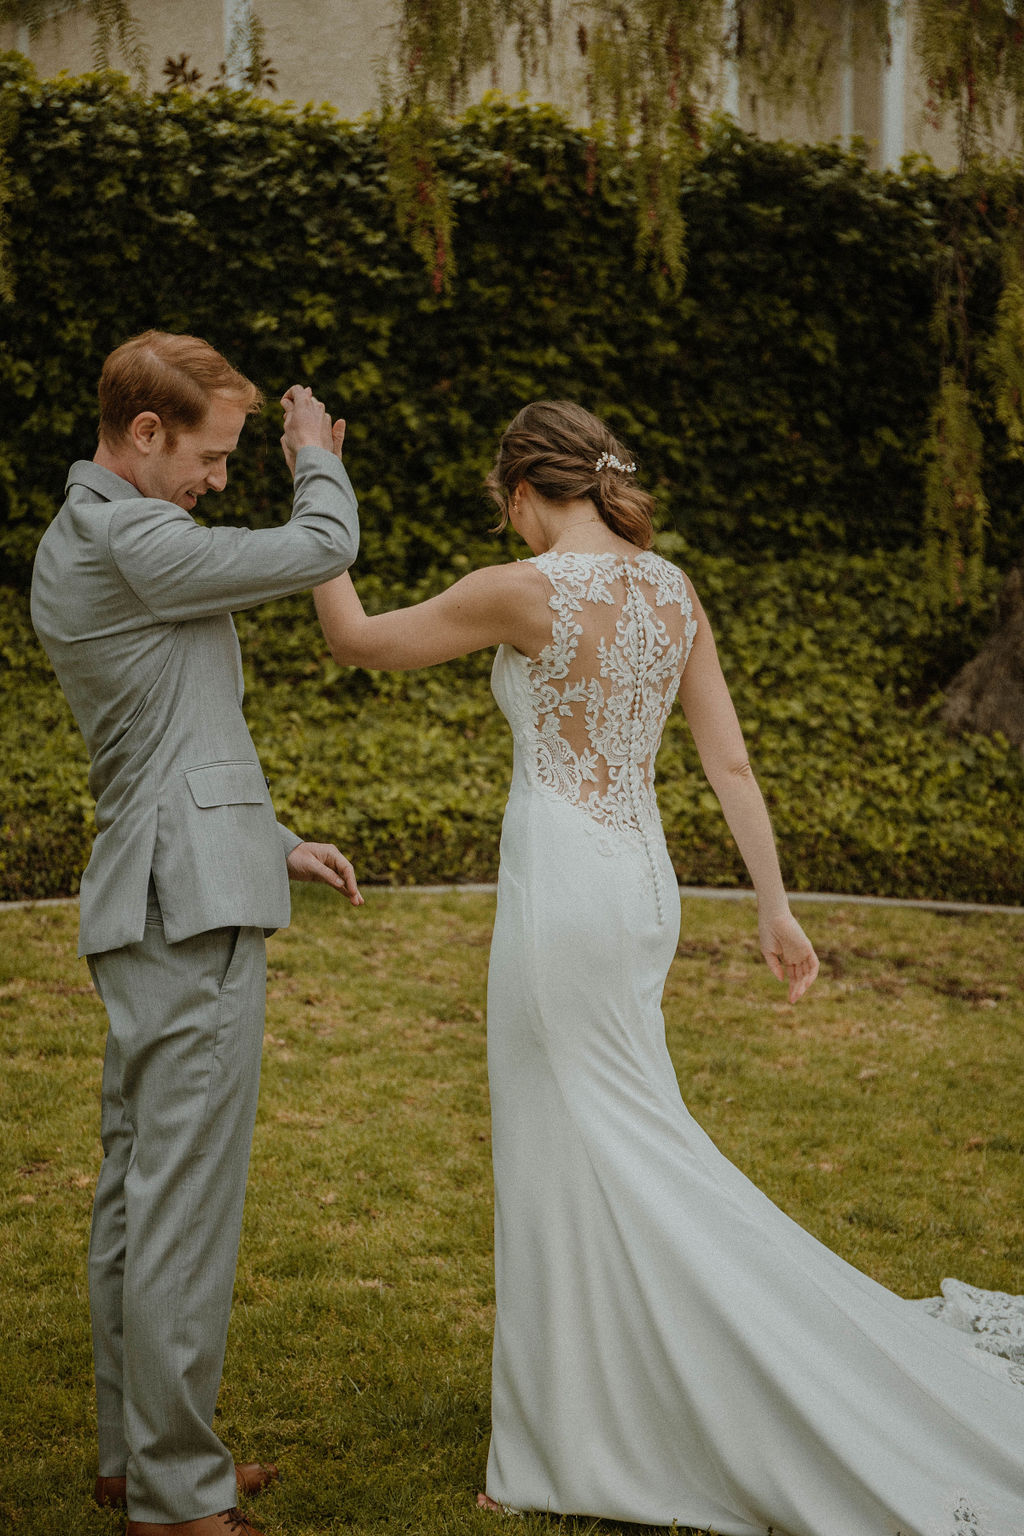 the bride twirls around her groom in her lace wedding dress